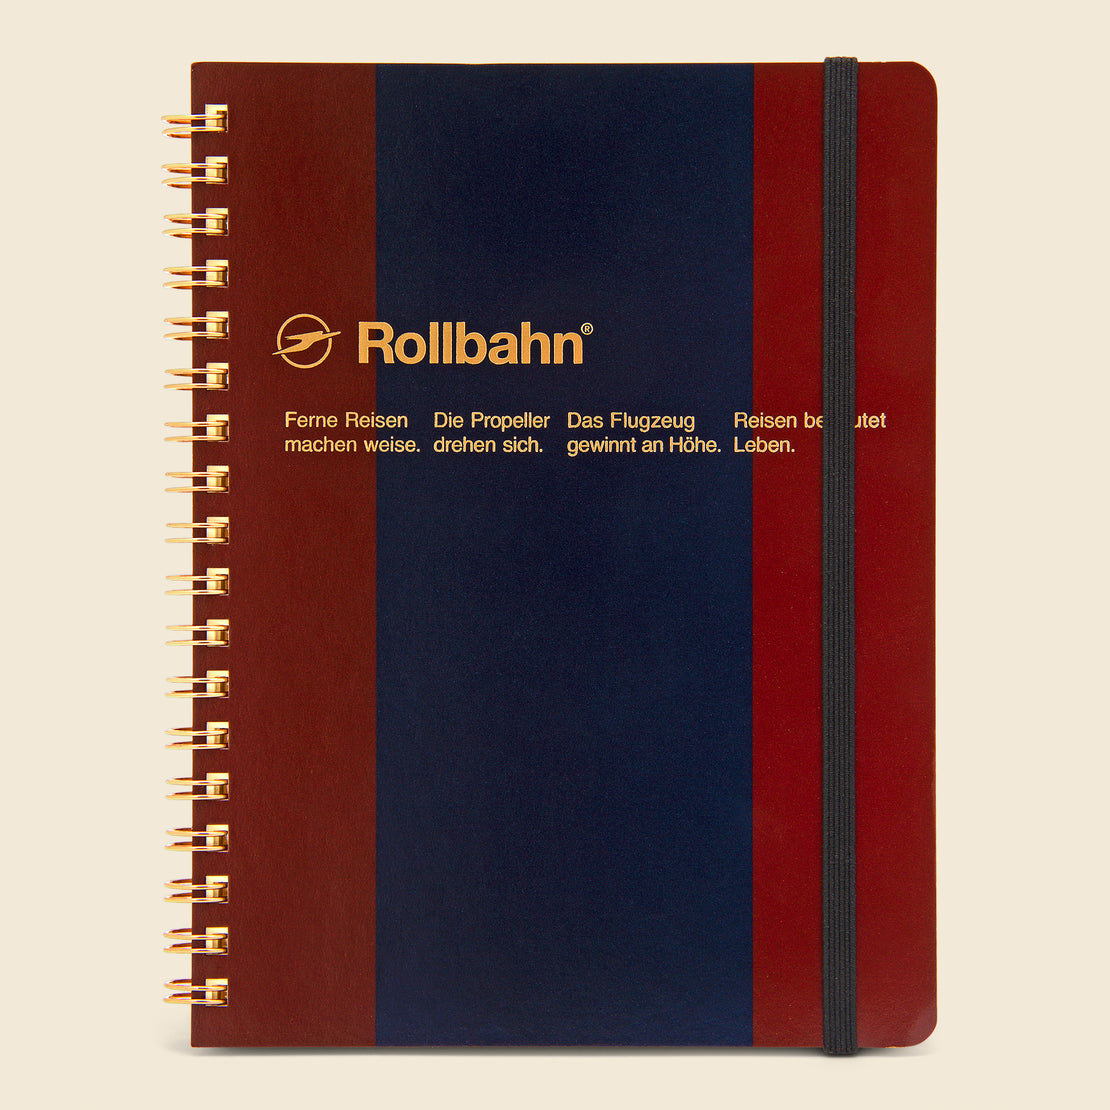 Paper Goods Rollbahn Spiral Notebook - Burgundy/Navy